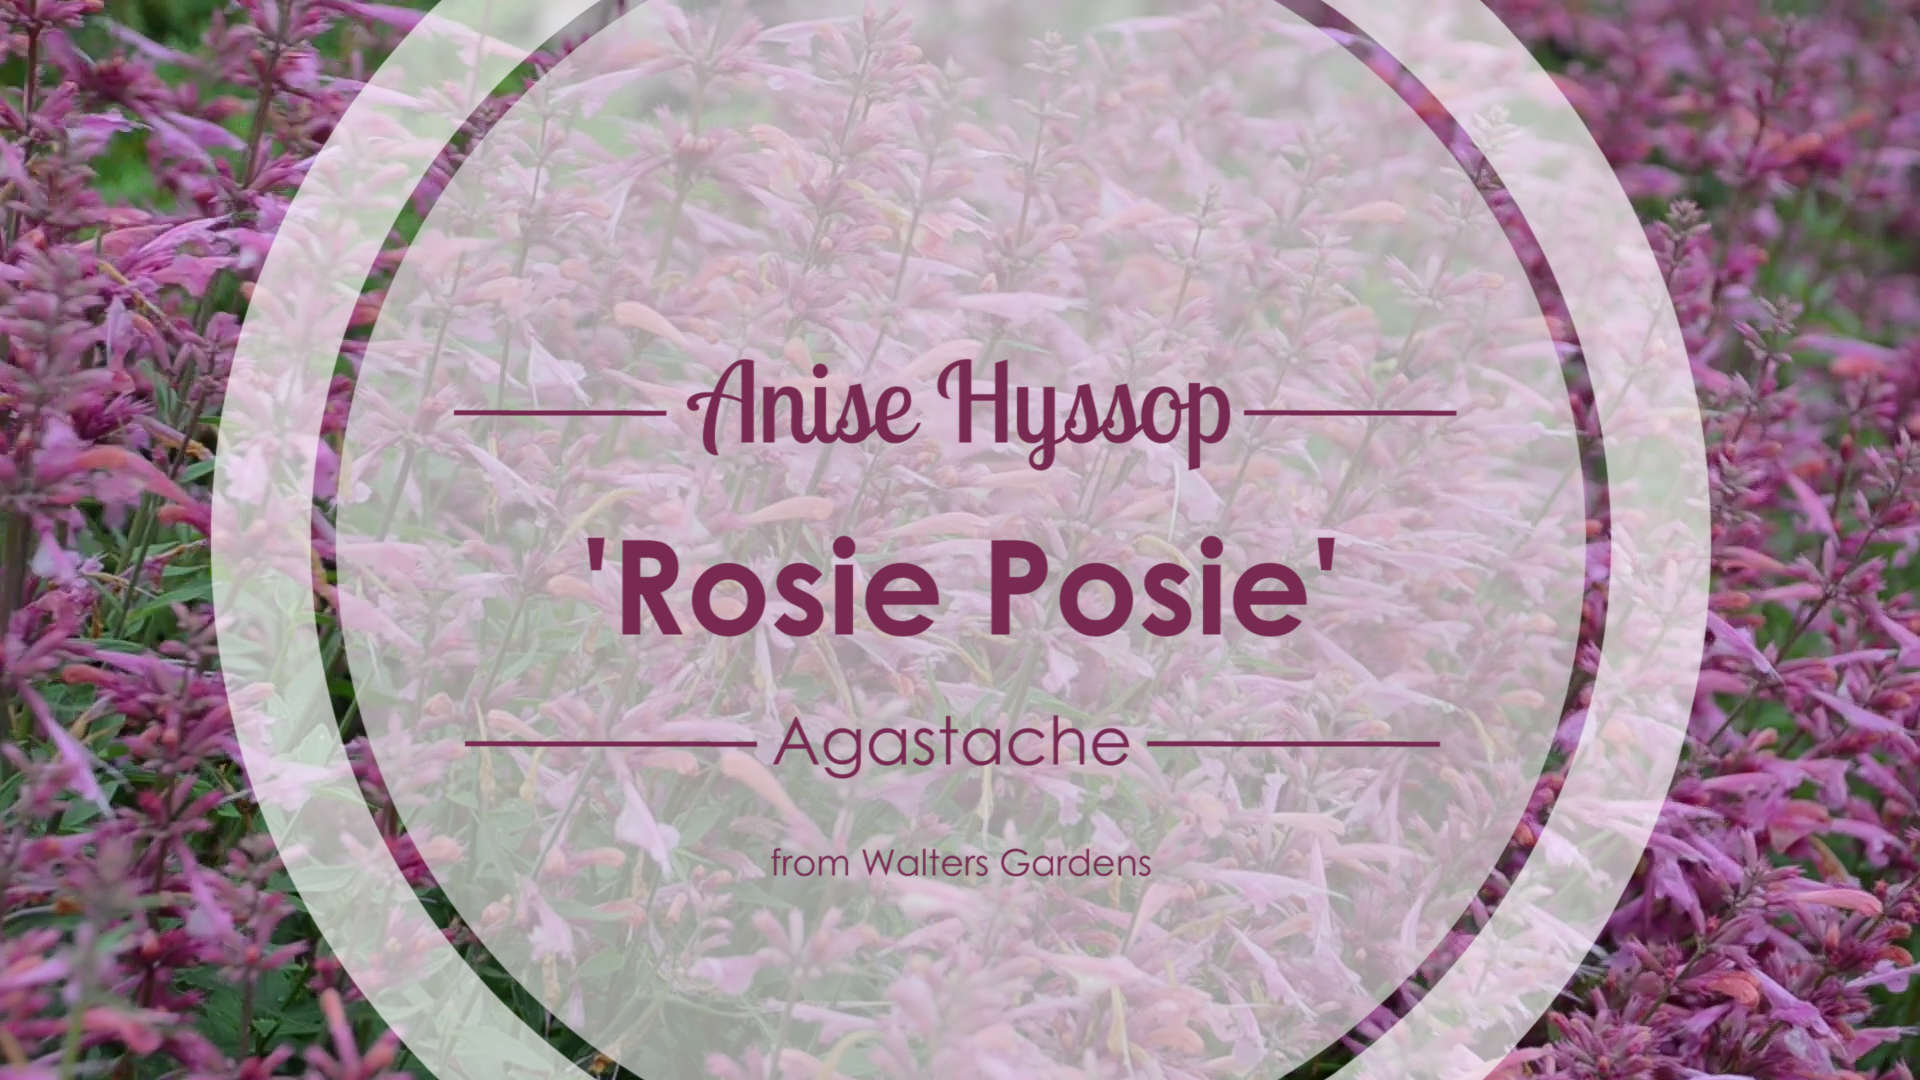 Agastache 'Rosie Posie' Anise Hyssop